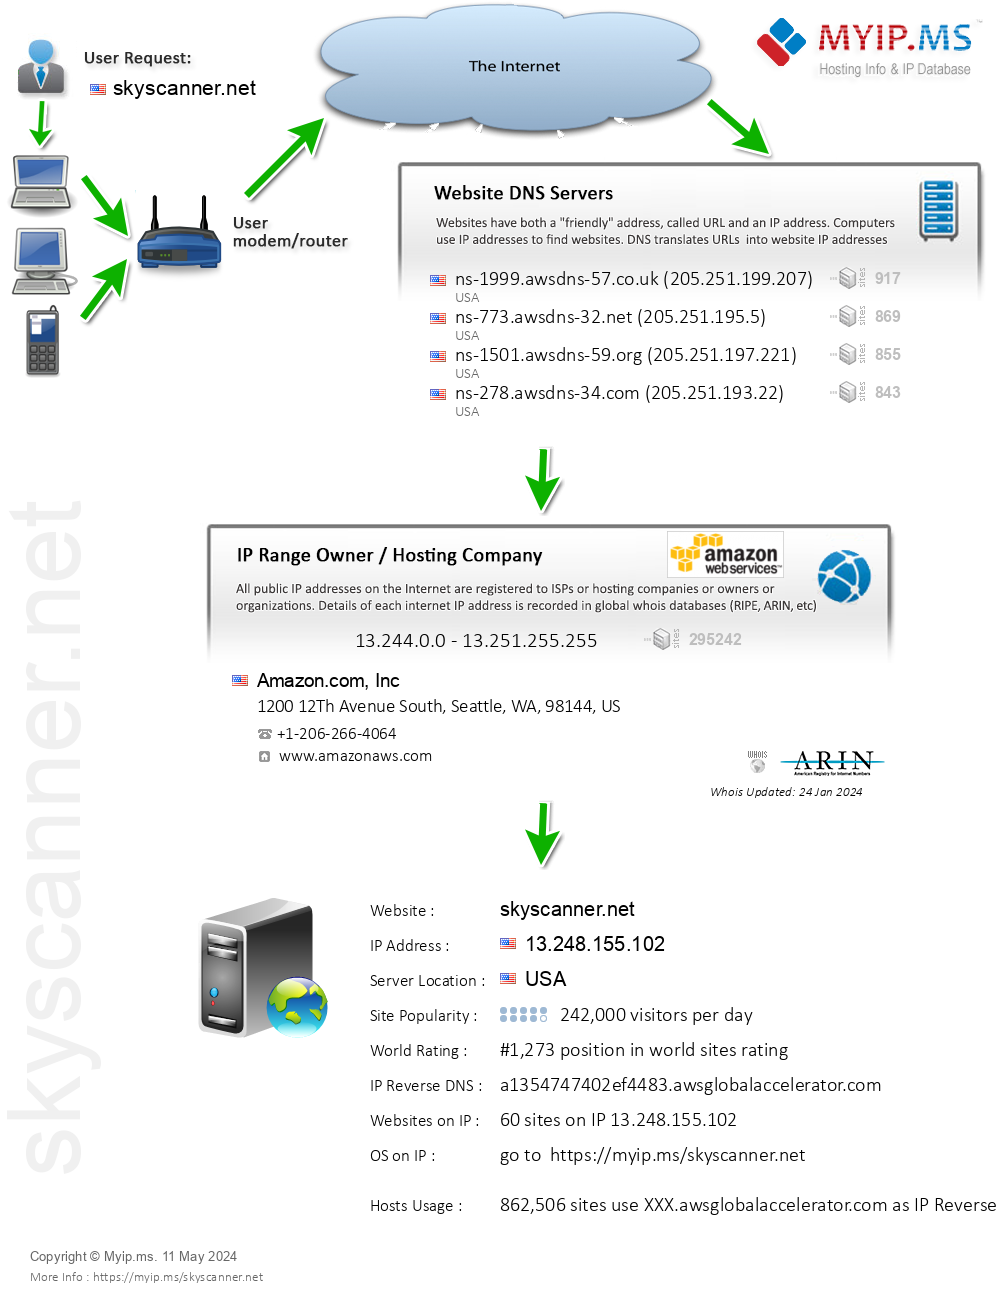 Skyscanner.net - Website Hosting Visual IP Diagram